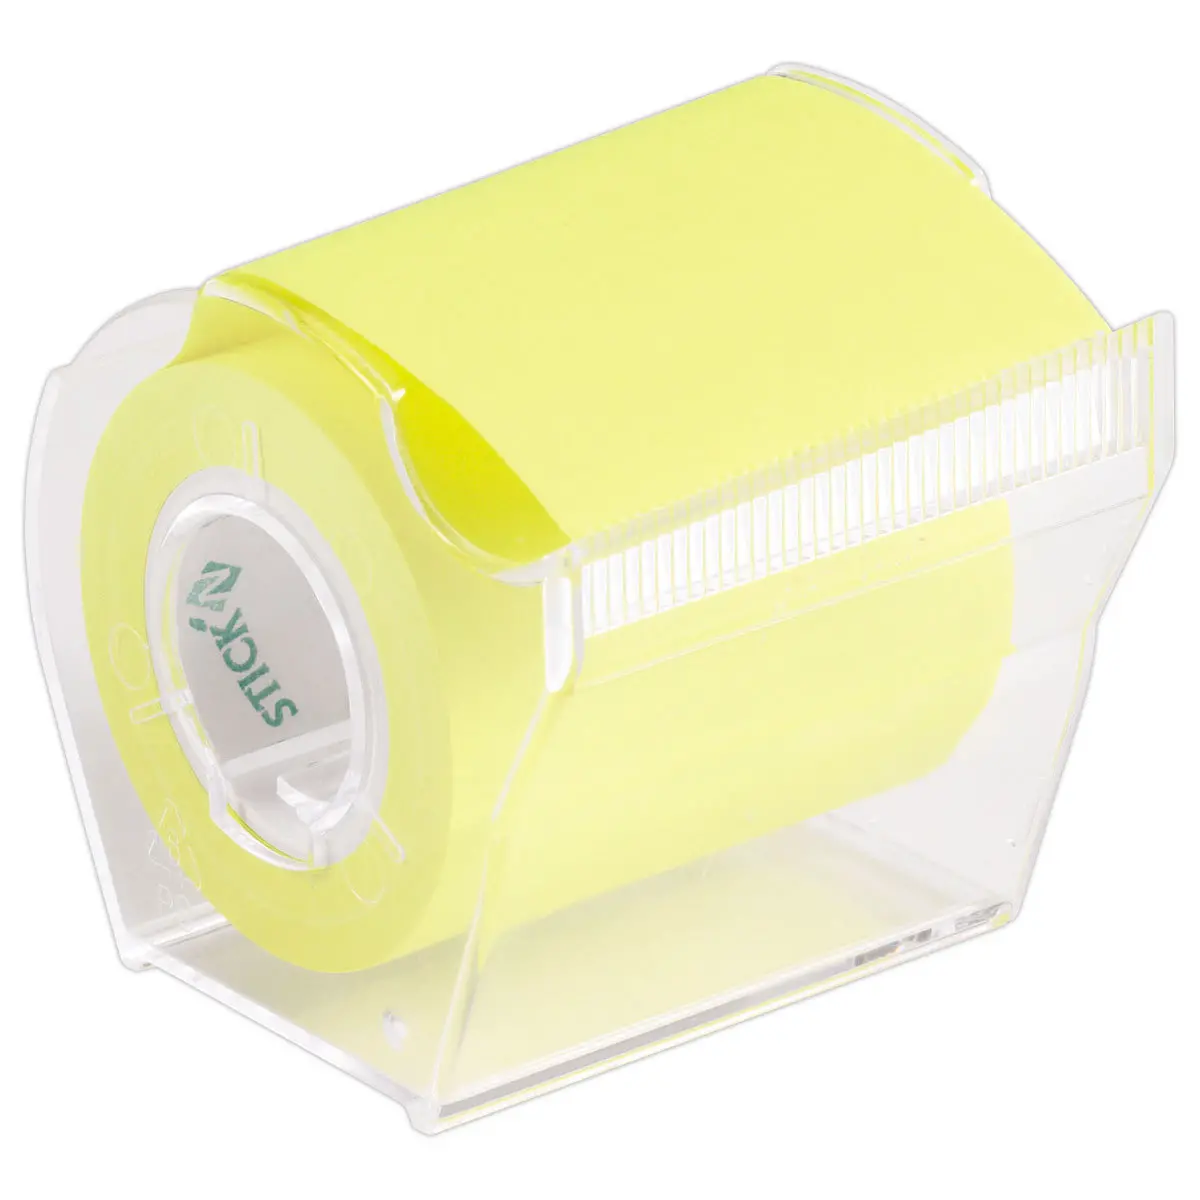 Dévidoir de notes jaune fluo - rouleau de 10m - FIDUCIAL OFFICE SOLUTIONS photo du produit